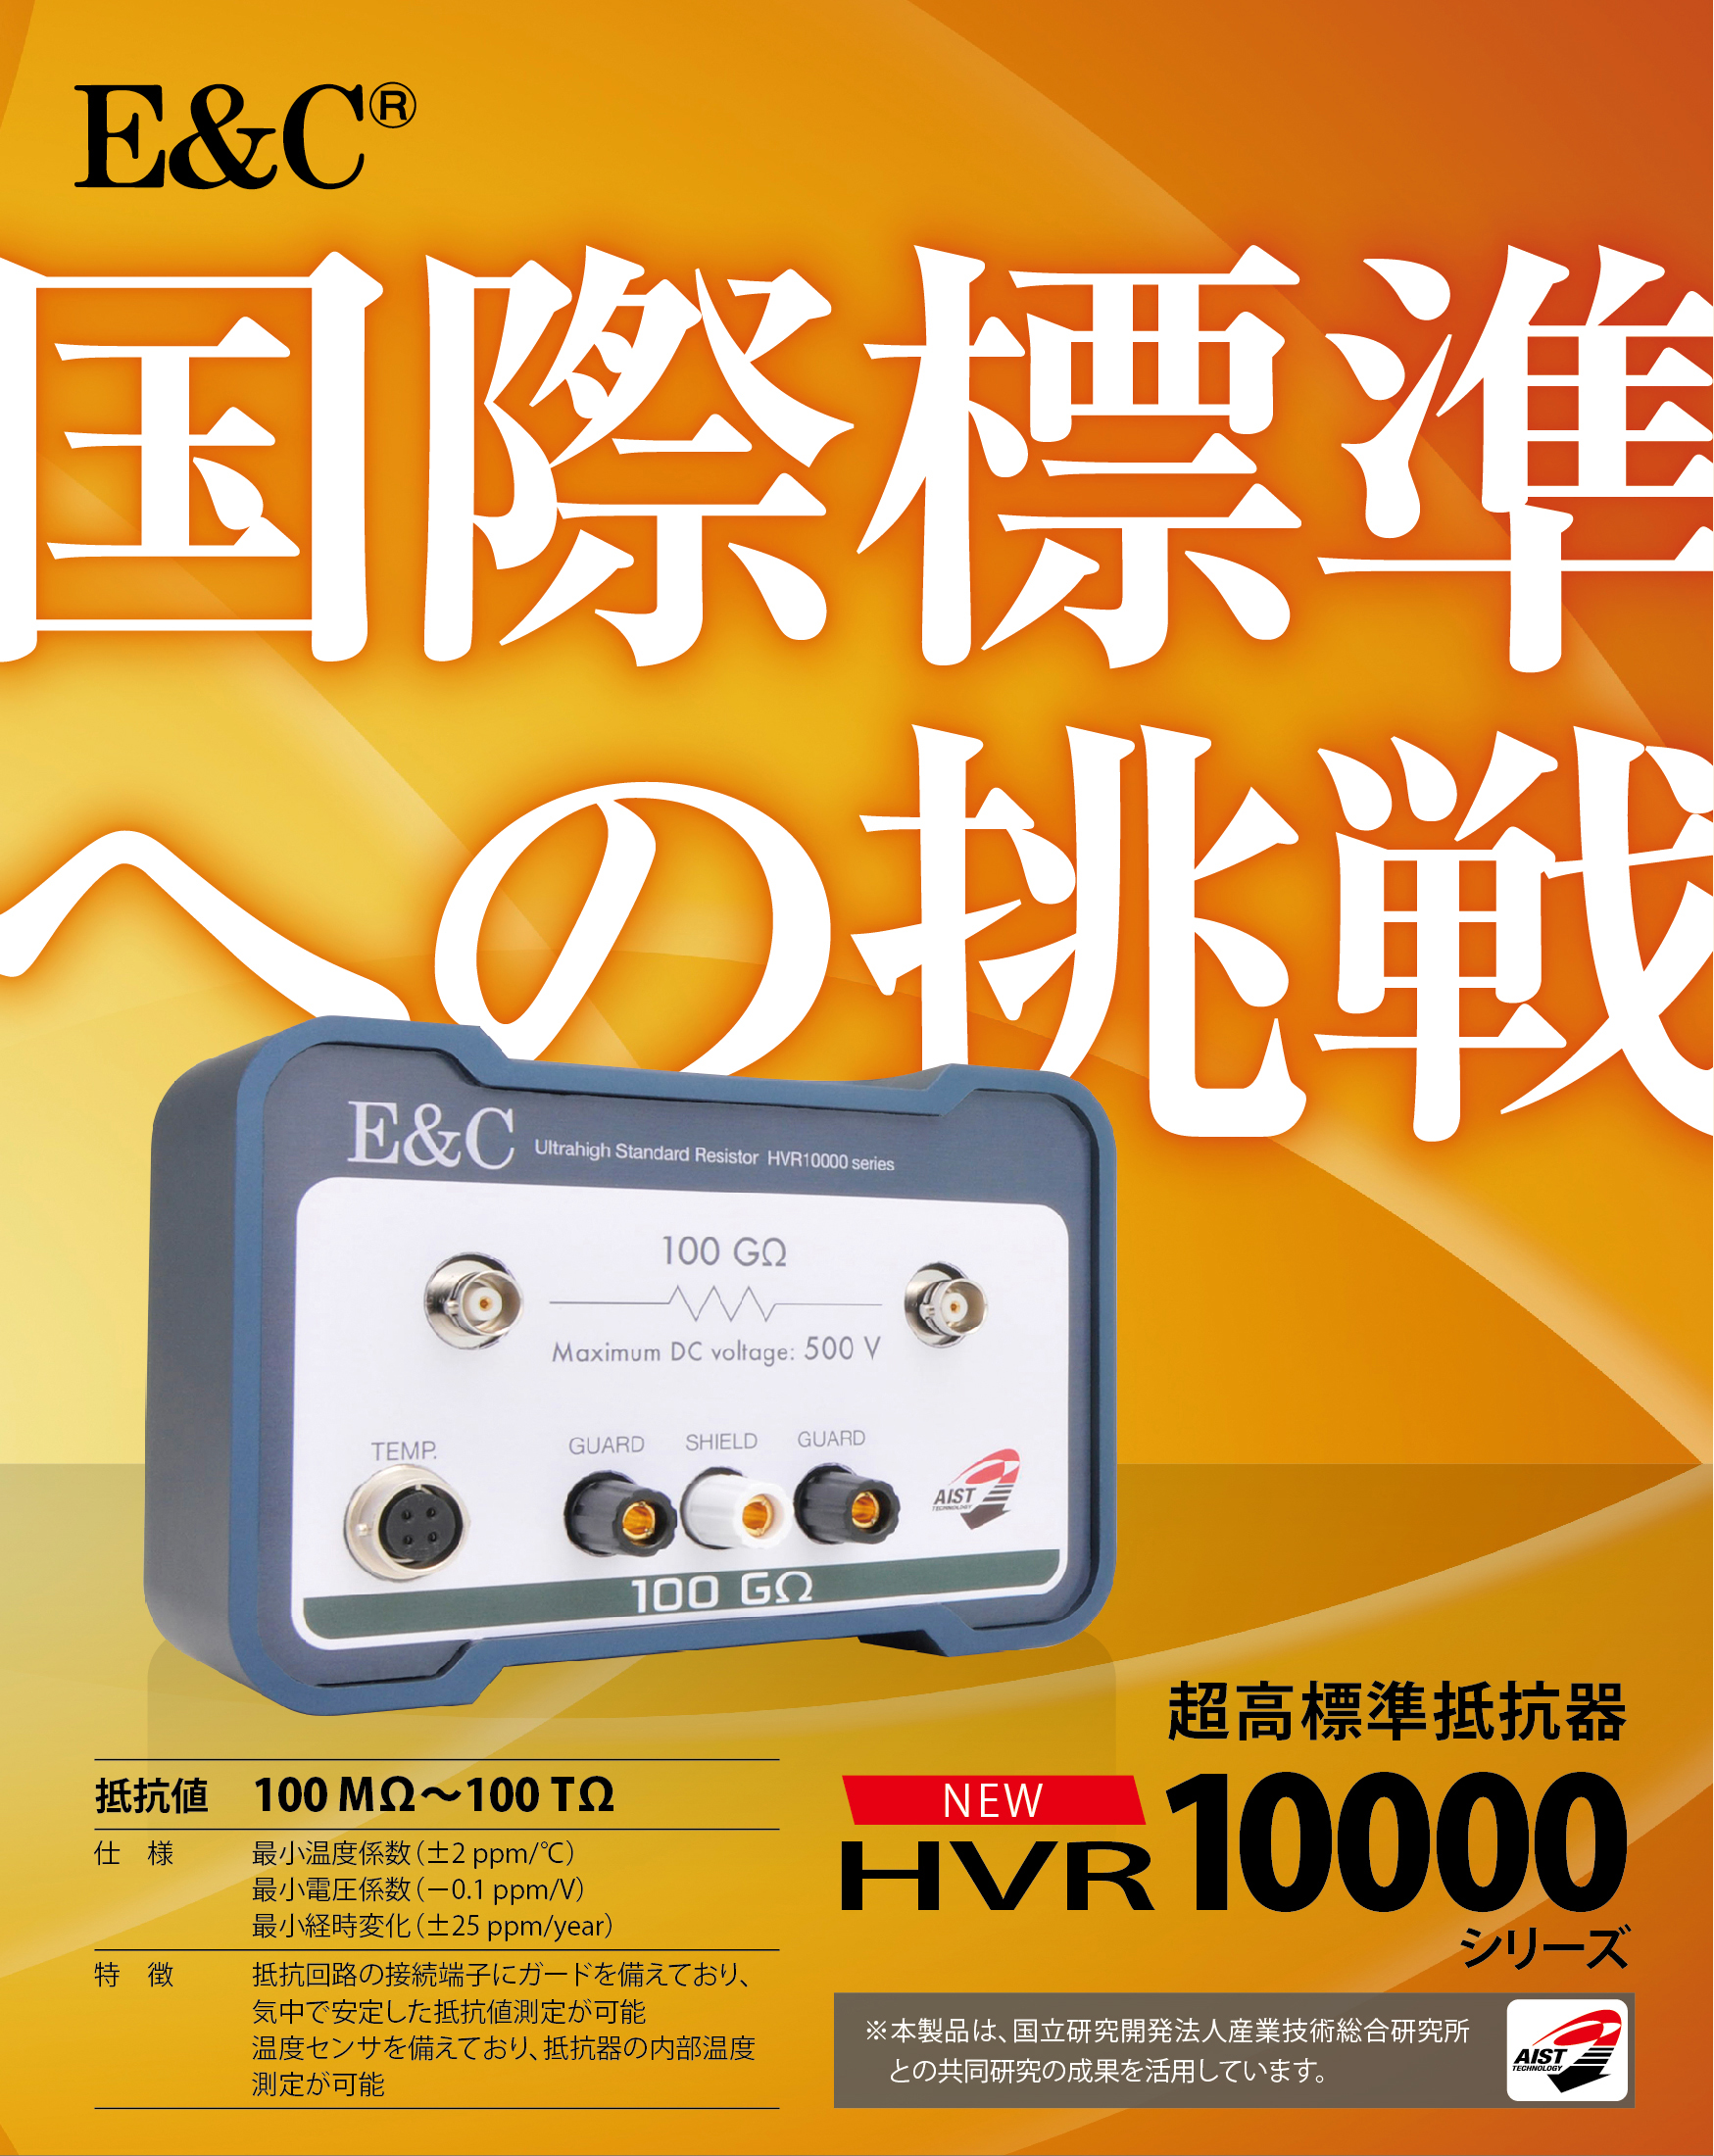 超高標準抵抗器 HVR10000シリーズ | 株式会社日本ファインケム